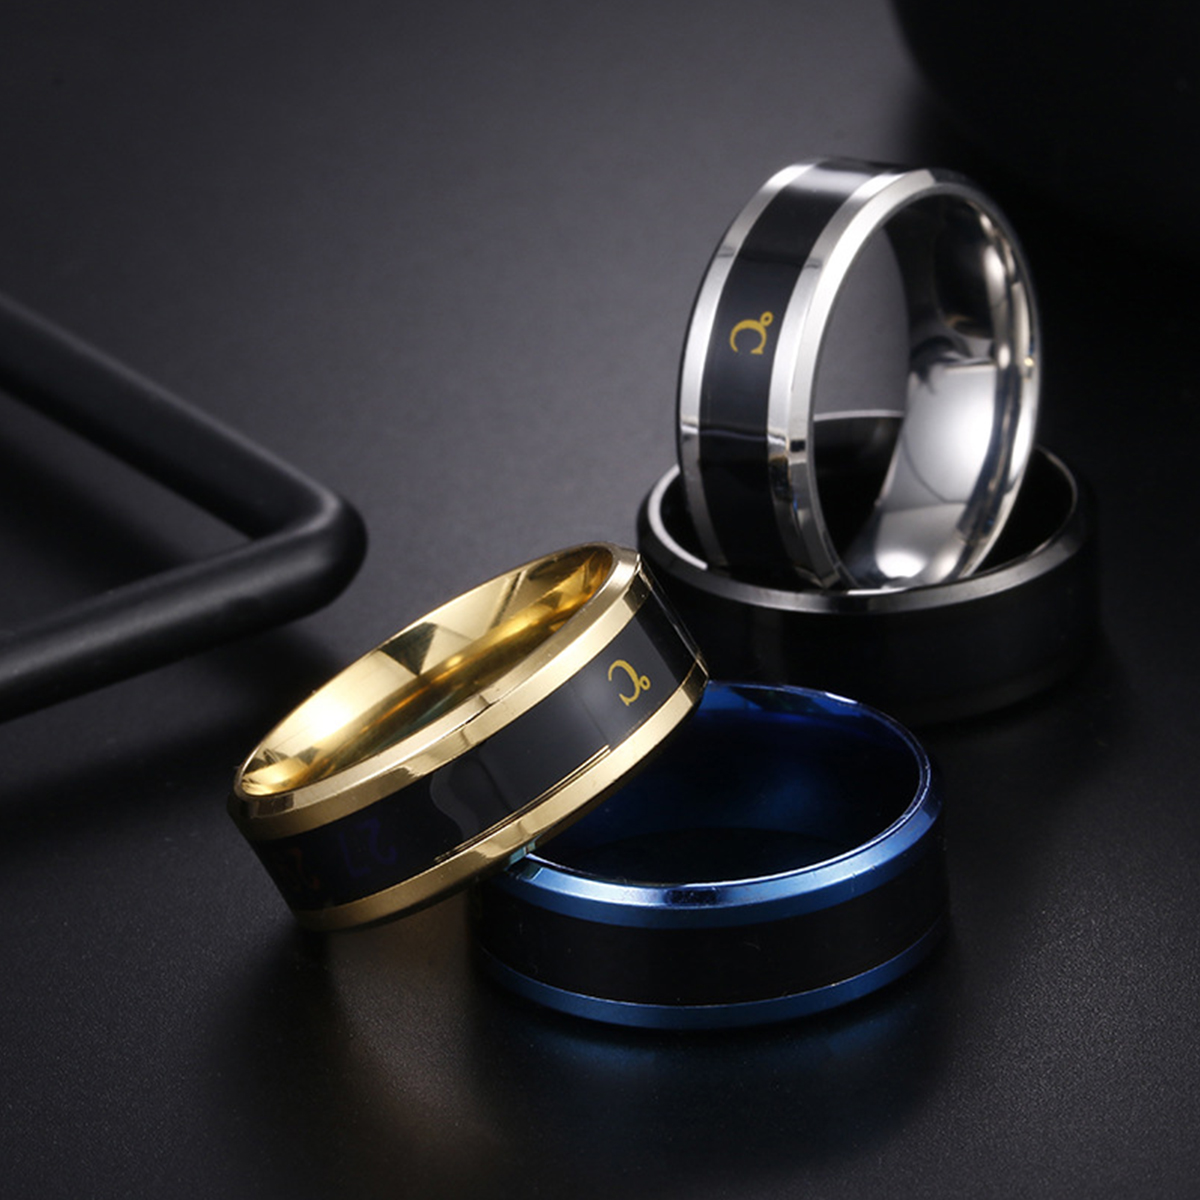 anel unissex, anel masculino, design sofisticado, três opções de cores, dourado, prata ou azul